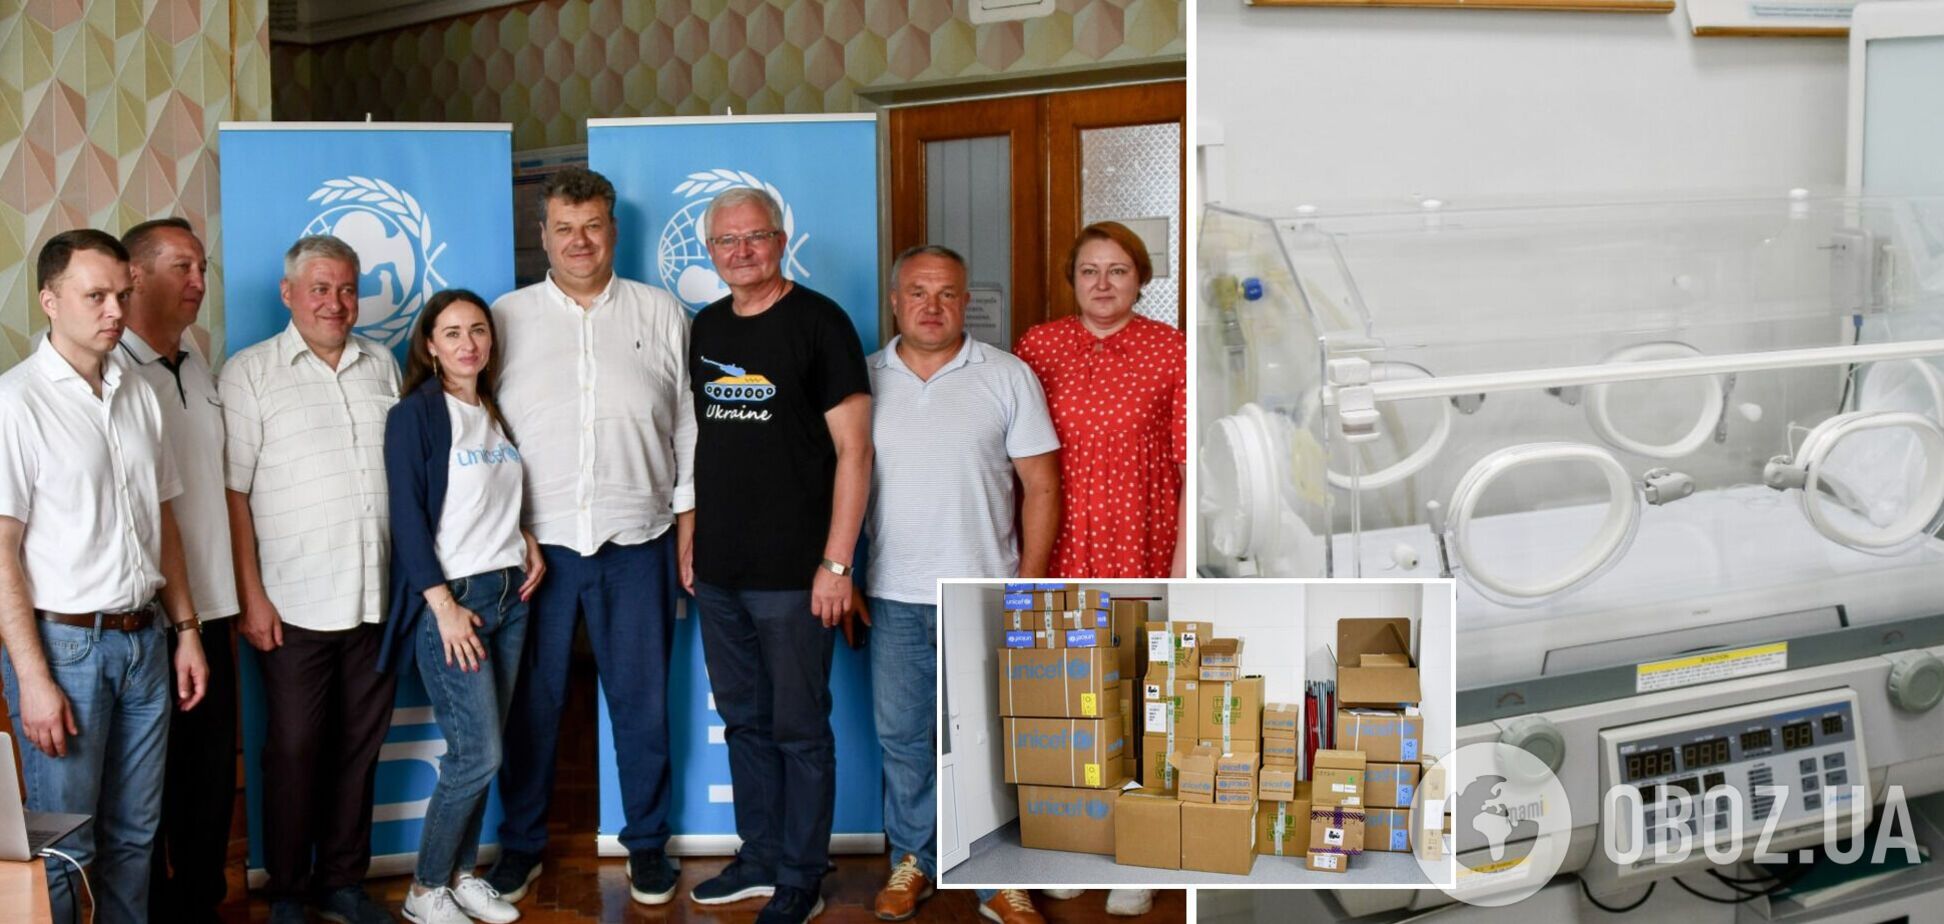 Фонд UNICEF передал партию медицинского оборудования и препаратов Коростышевской больницы Житомирской области. Фото